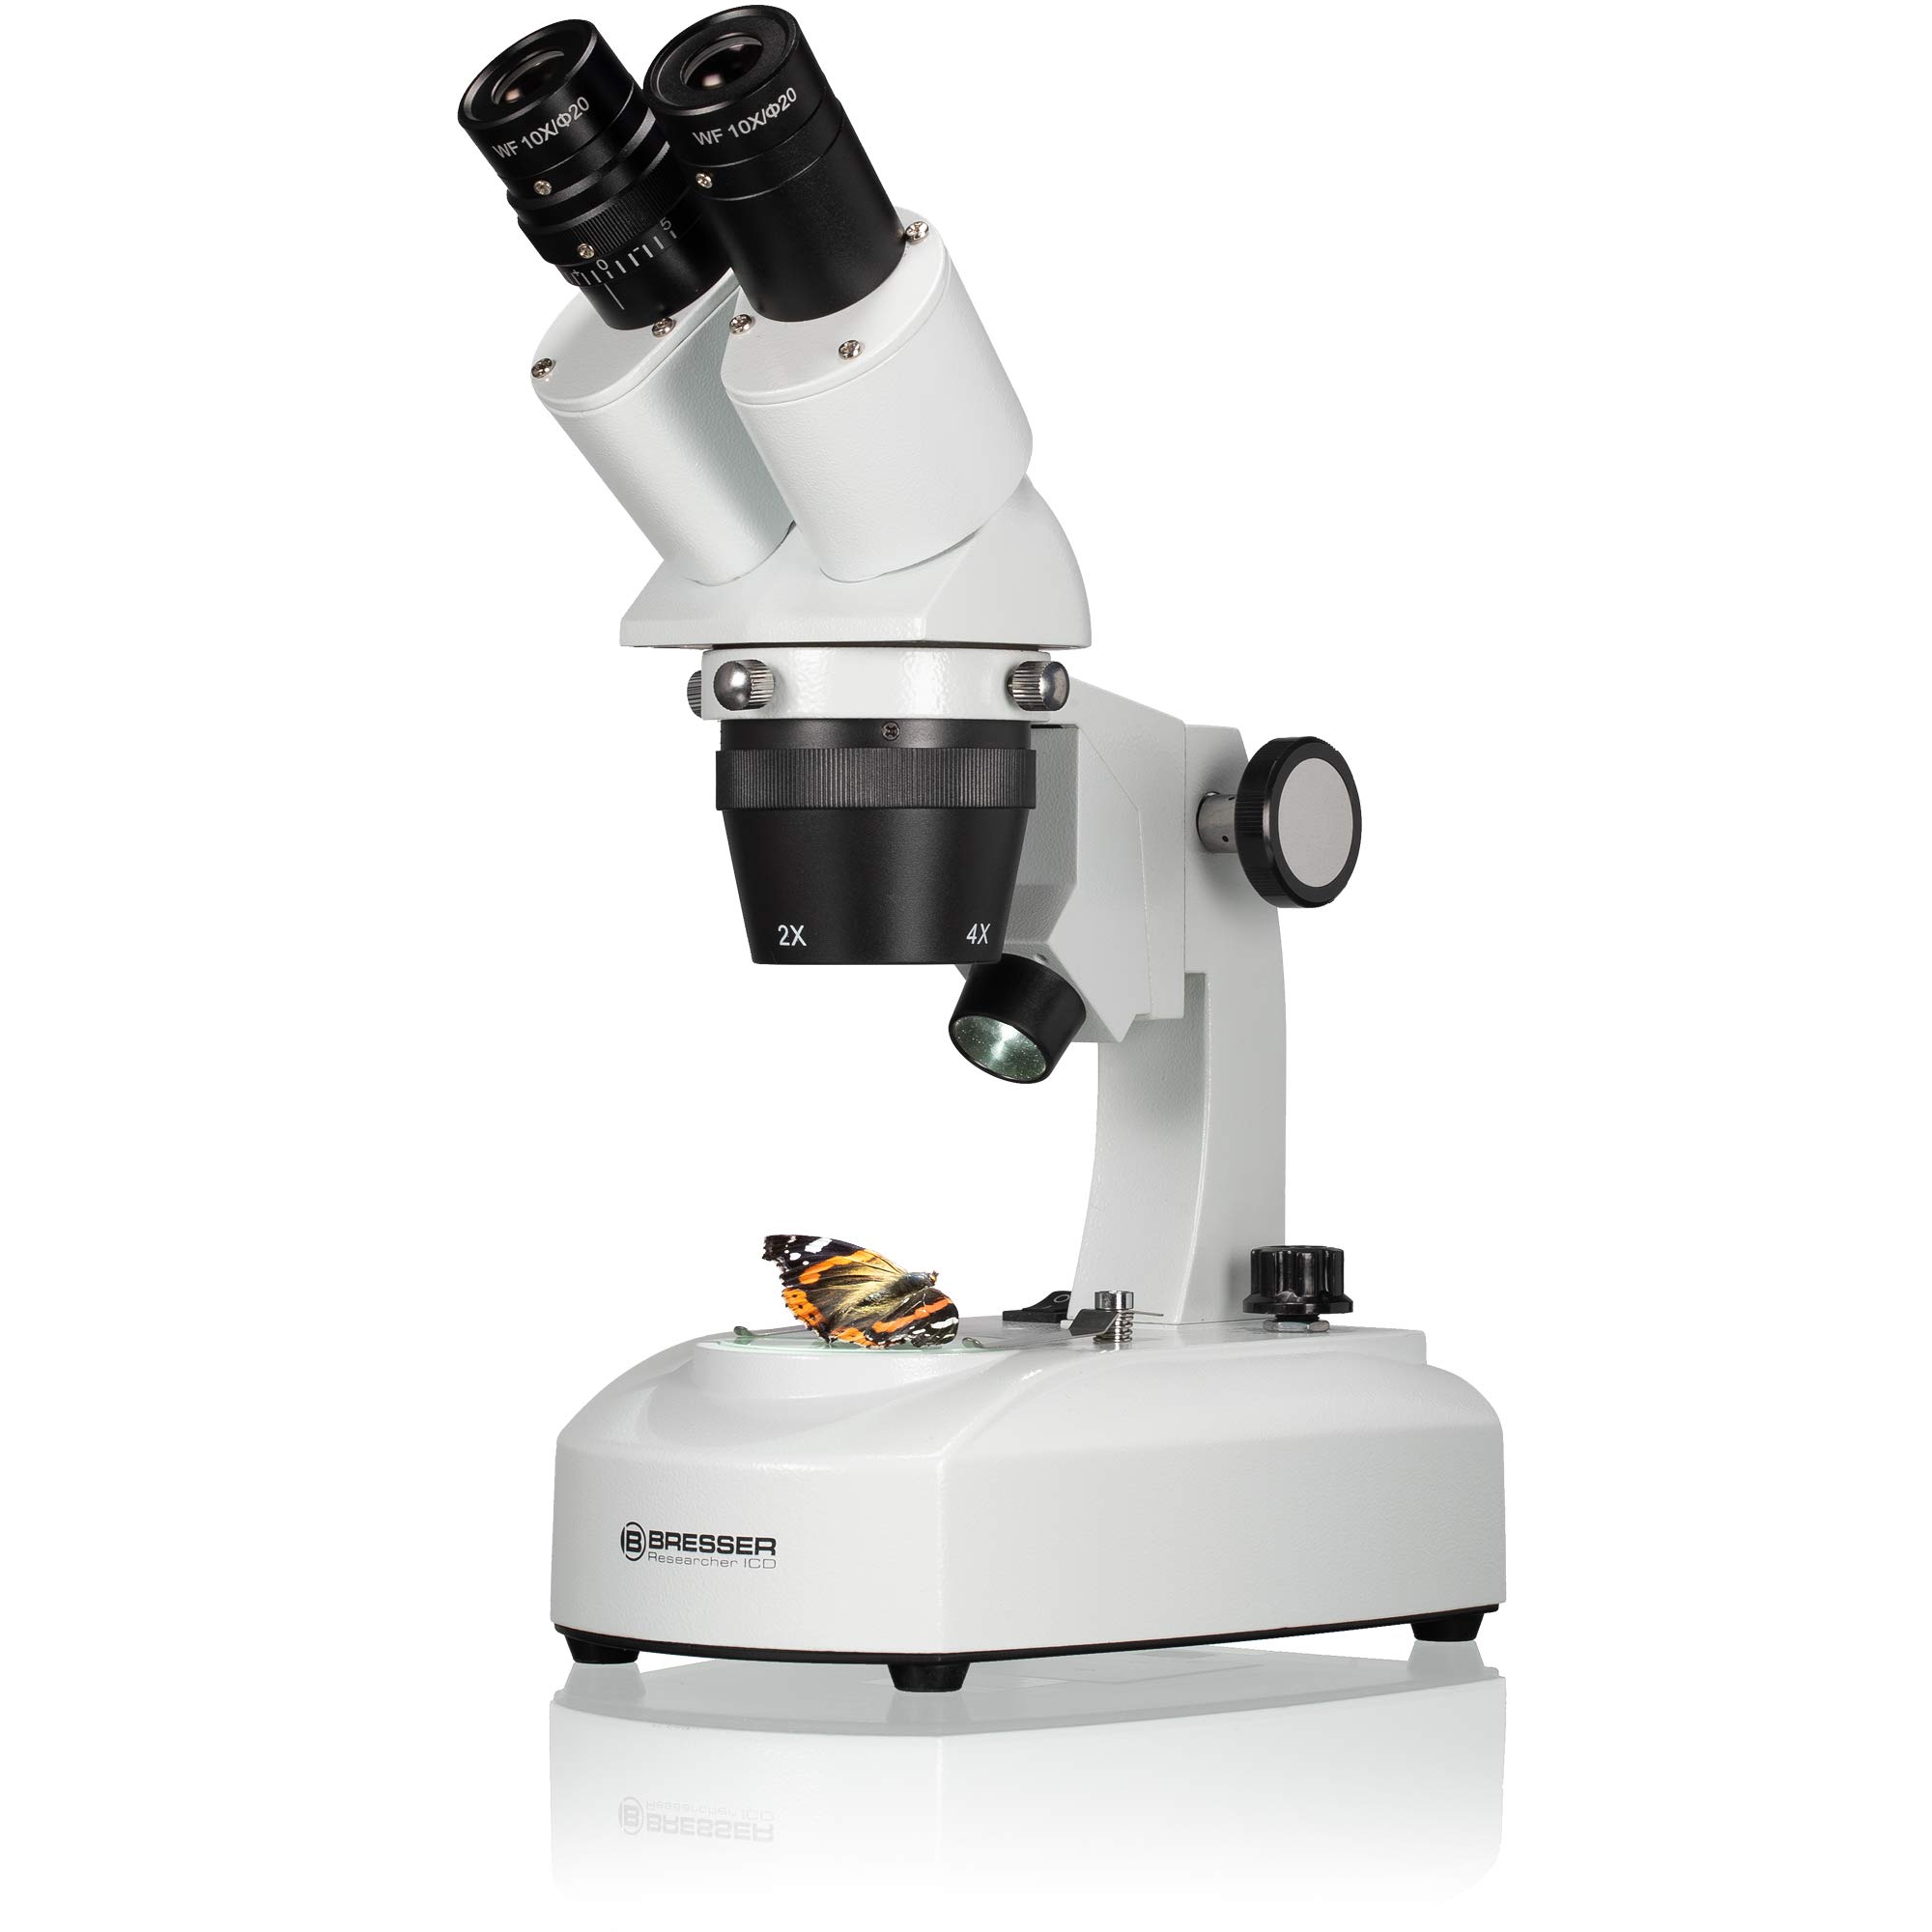 Bresser 3D Stereo Auflicht Durchlicht Mikroskop Researcher ICD LED 20x-80x mit 360° drehbarem Tubus, LED Beleuchtung mit Akku- oder Netzbetrieb, für dreidimensionale Beobachtungen